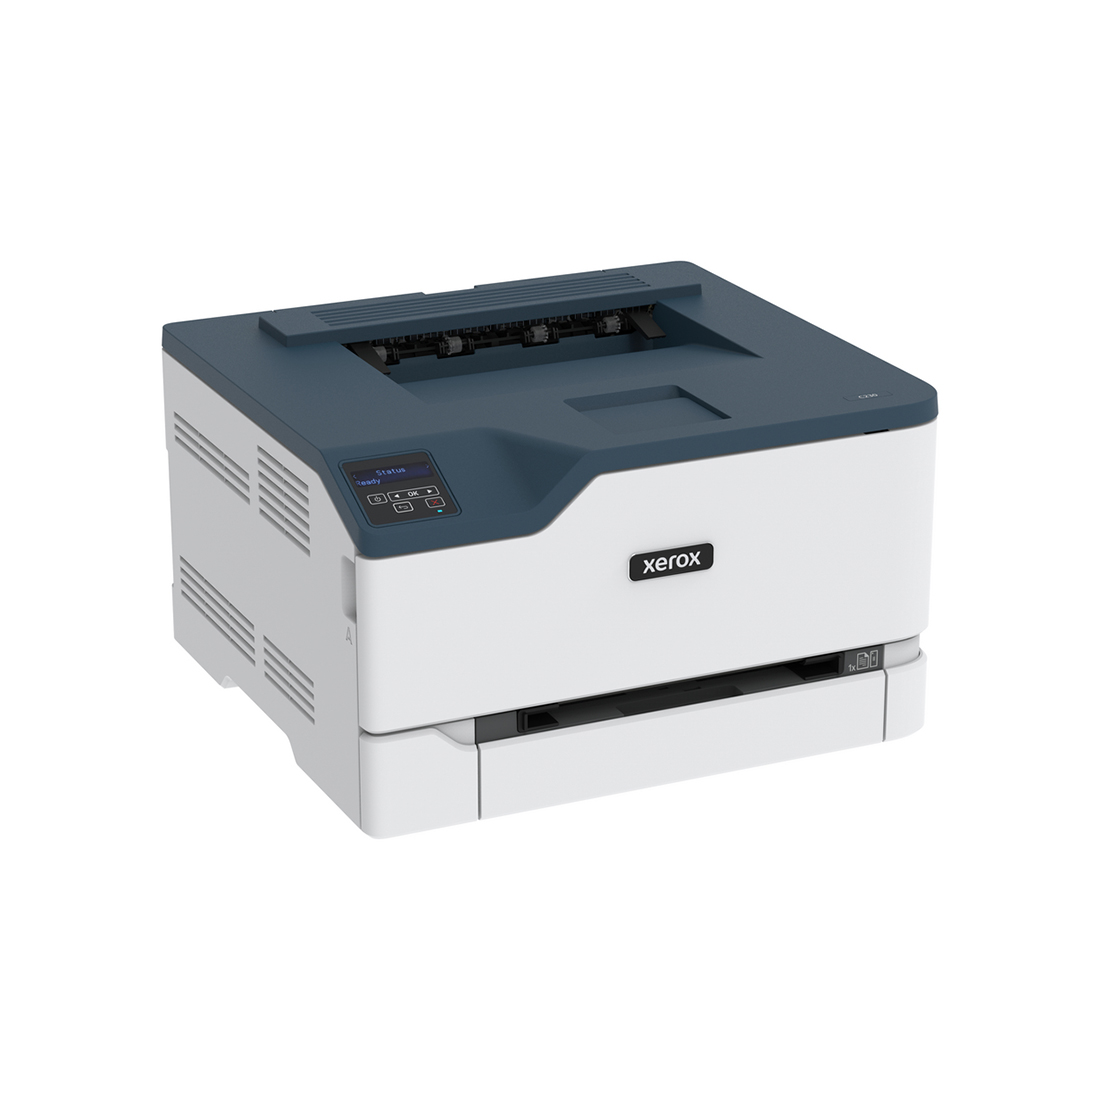 Цветной принтер, Xerox, C230DNI, A4, Лазерный, 24/22 стр/мин, Нагрузка (max) 30K в месяц, 250+1 стр.